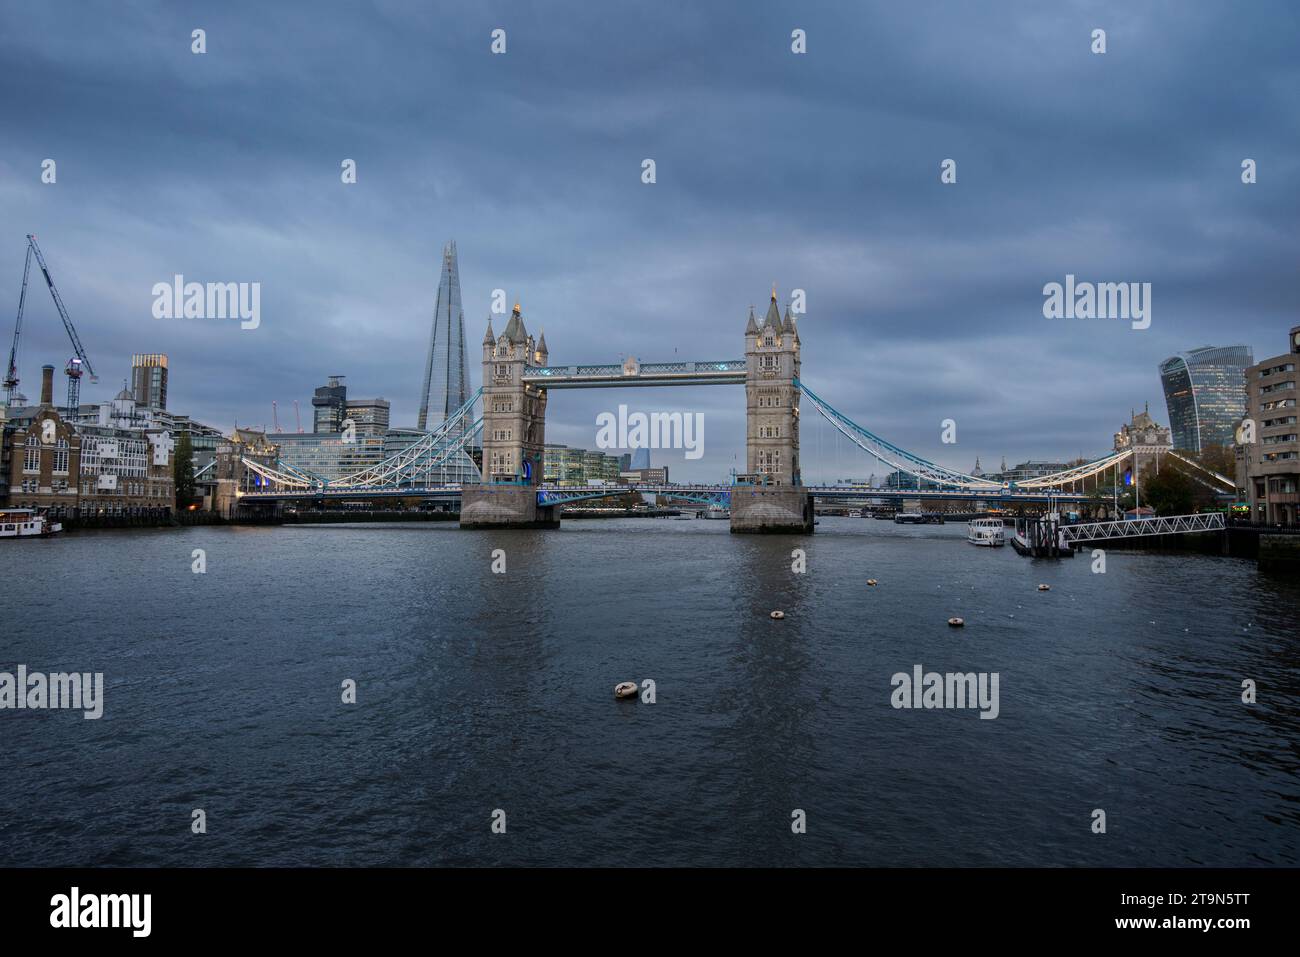 Fin d'après-midi en novembre Tower Bridge, chef-d'œuvre victorien traversant la Tamise, Londres, Angleterre, Royaume-Uni Banque D'Images